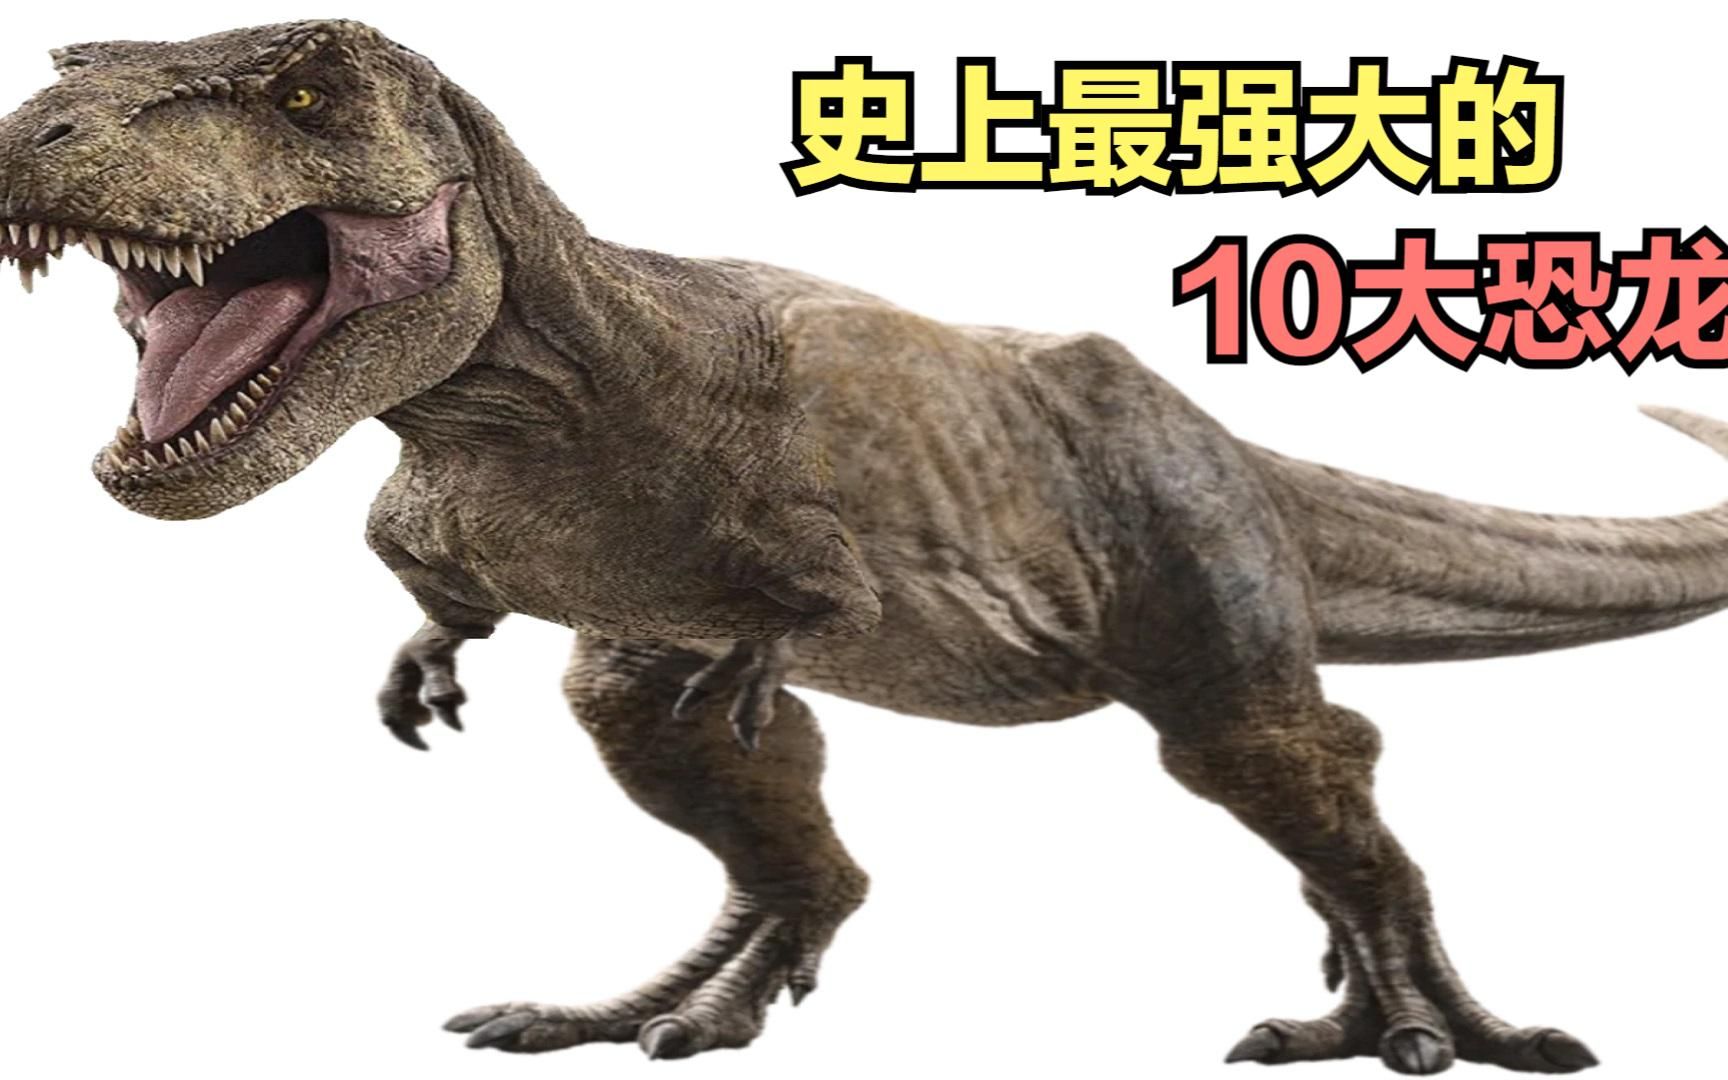 有史以来最强大的 10 种恐龙,鲨齿龙和霸王龙相比较,谁更厉害?